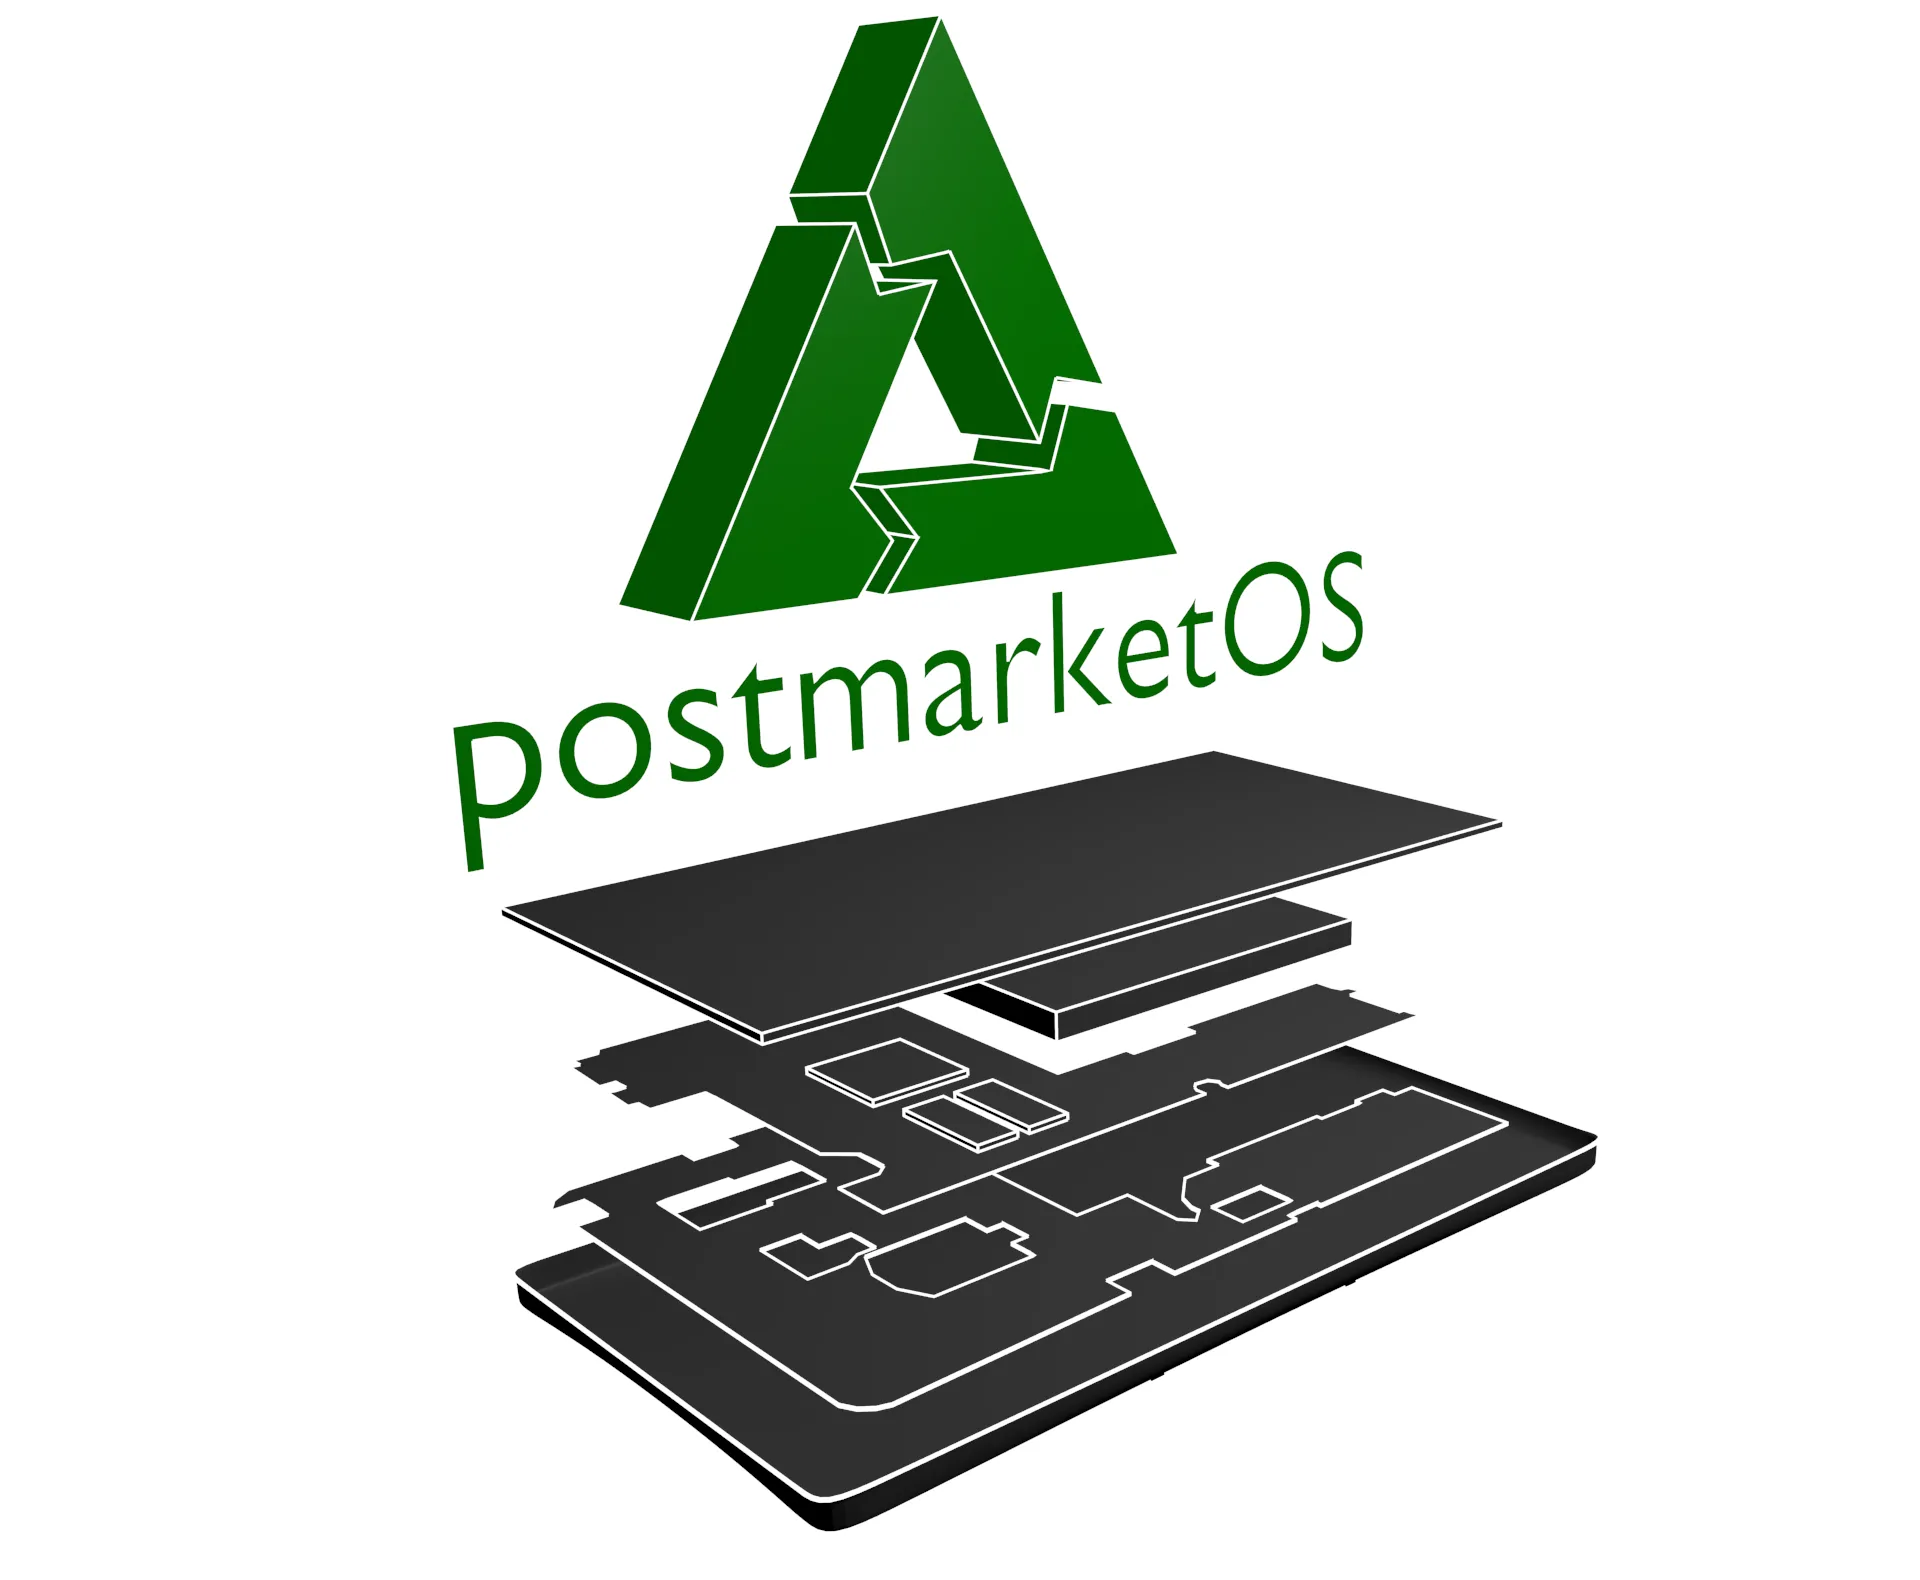 PostmarketOS 21.12.1 lançado com kernel 5.15.3 e suporte ao N900